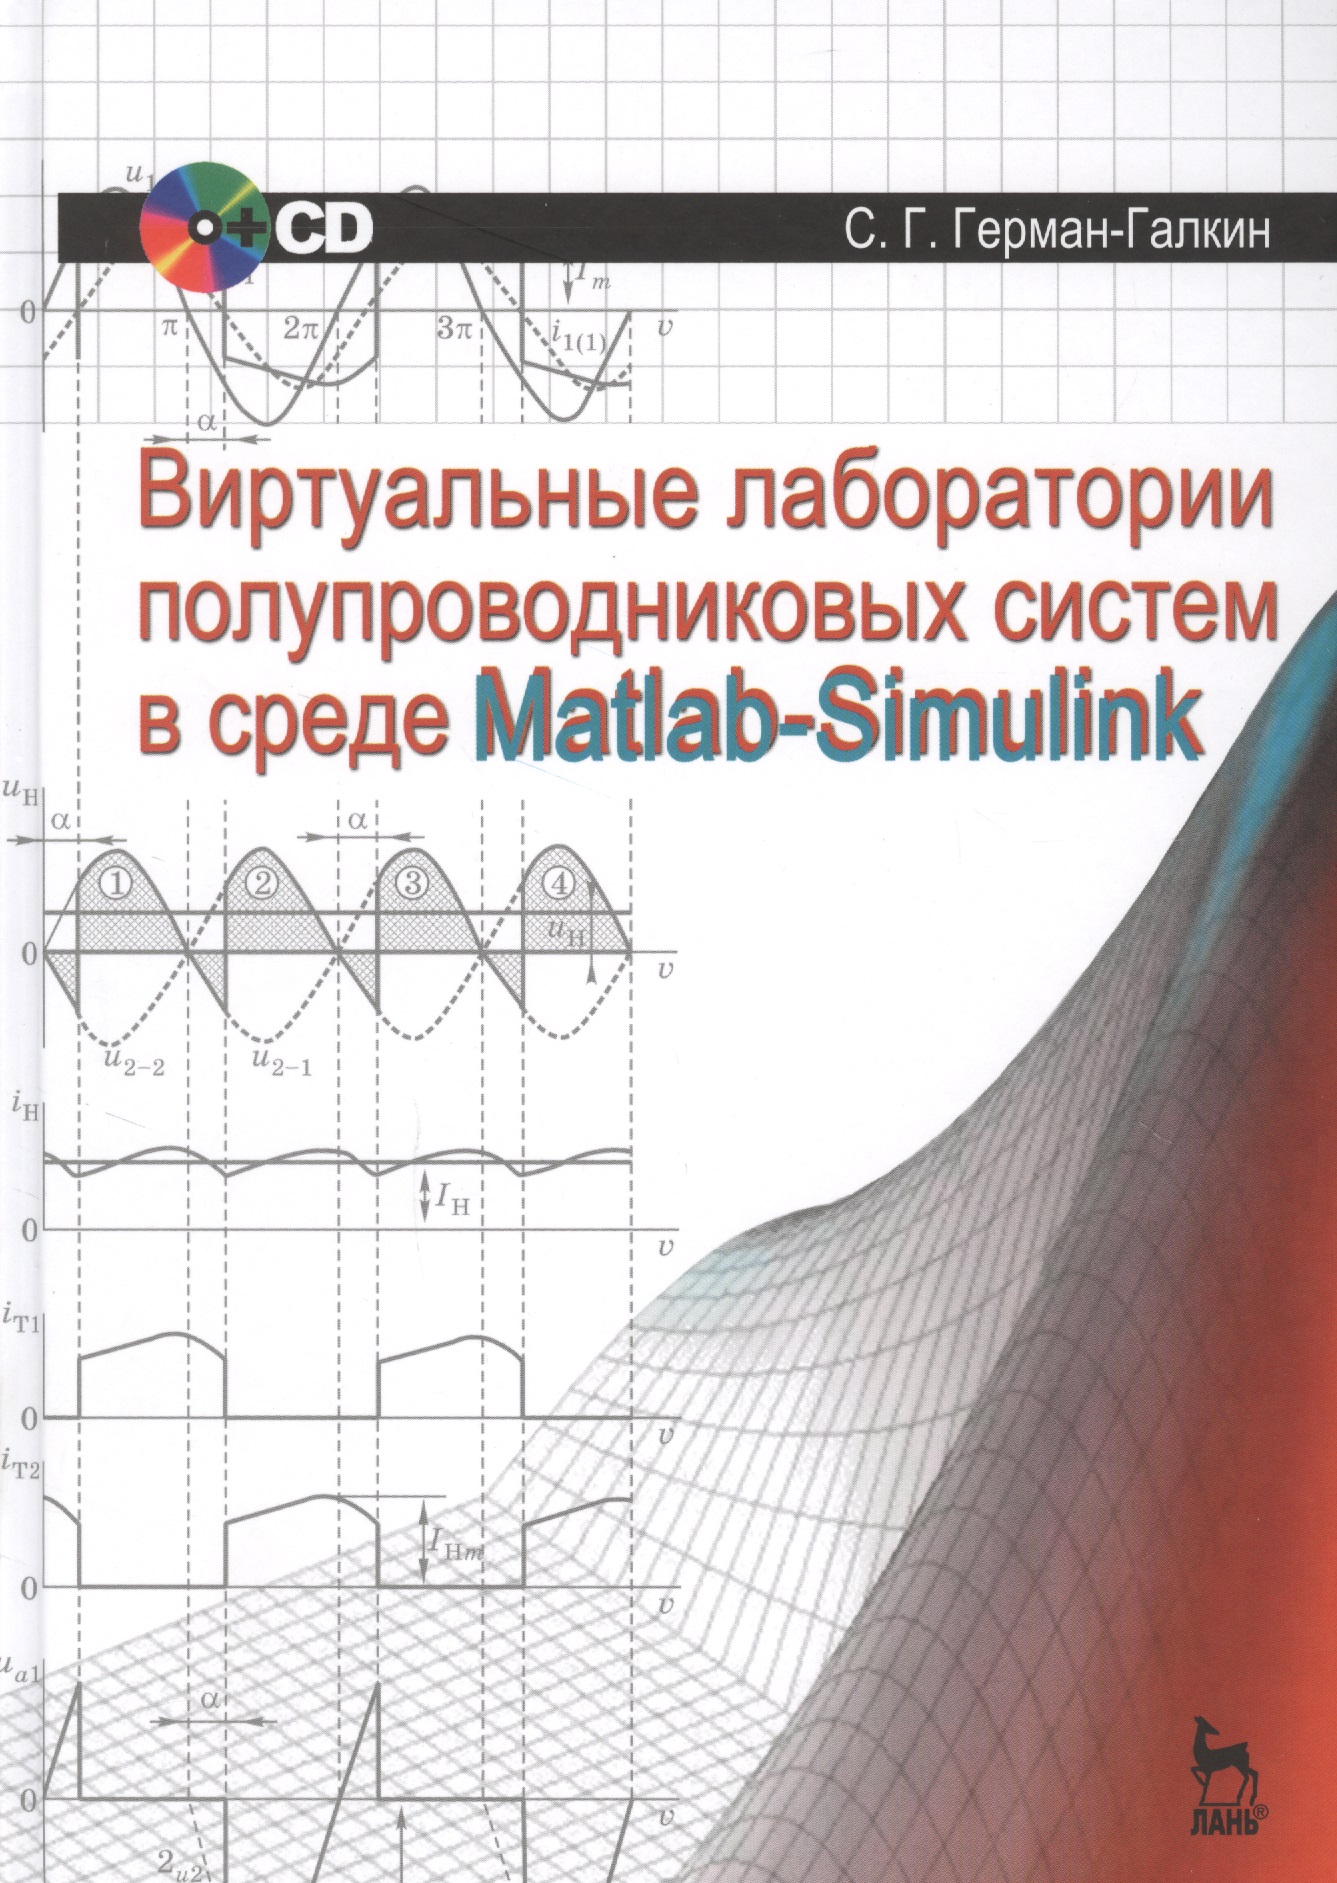       Matlab-Simulink + CD. , 1- 